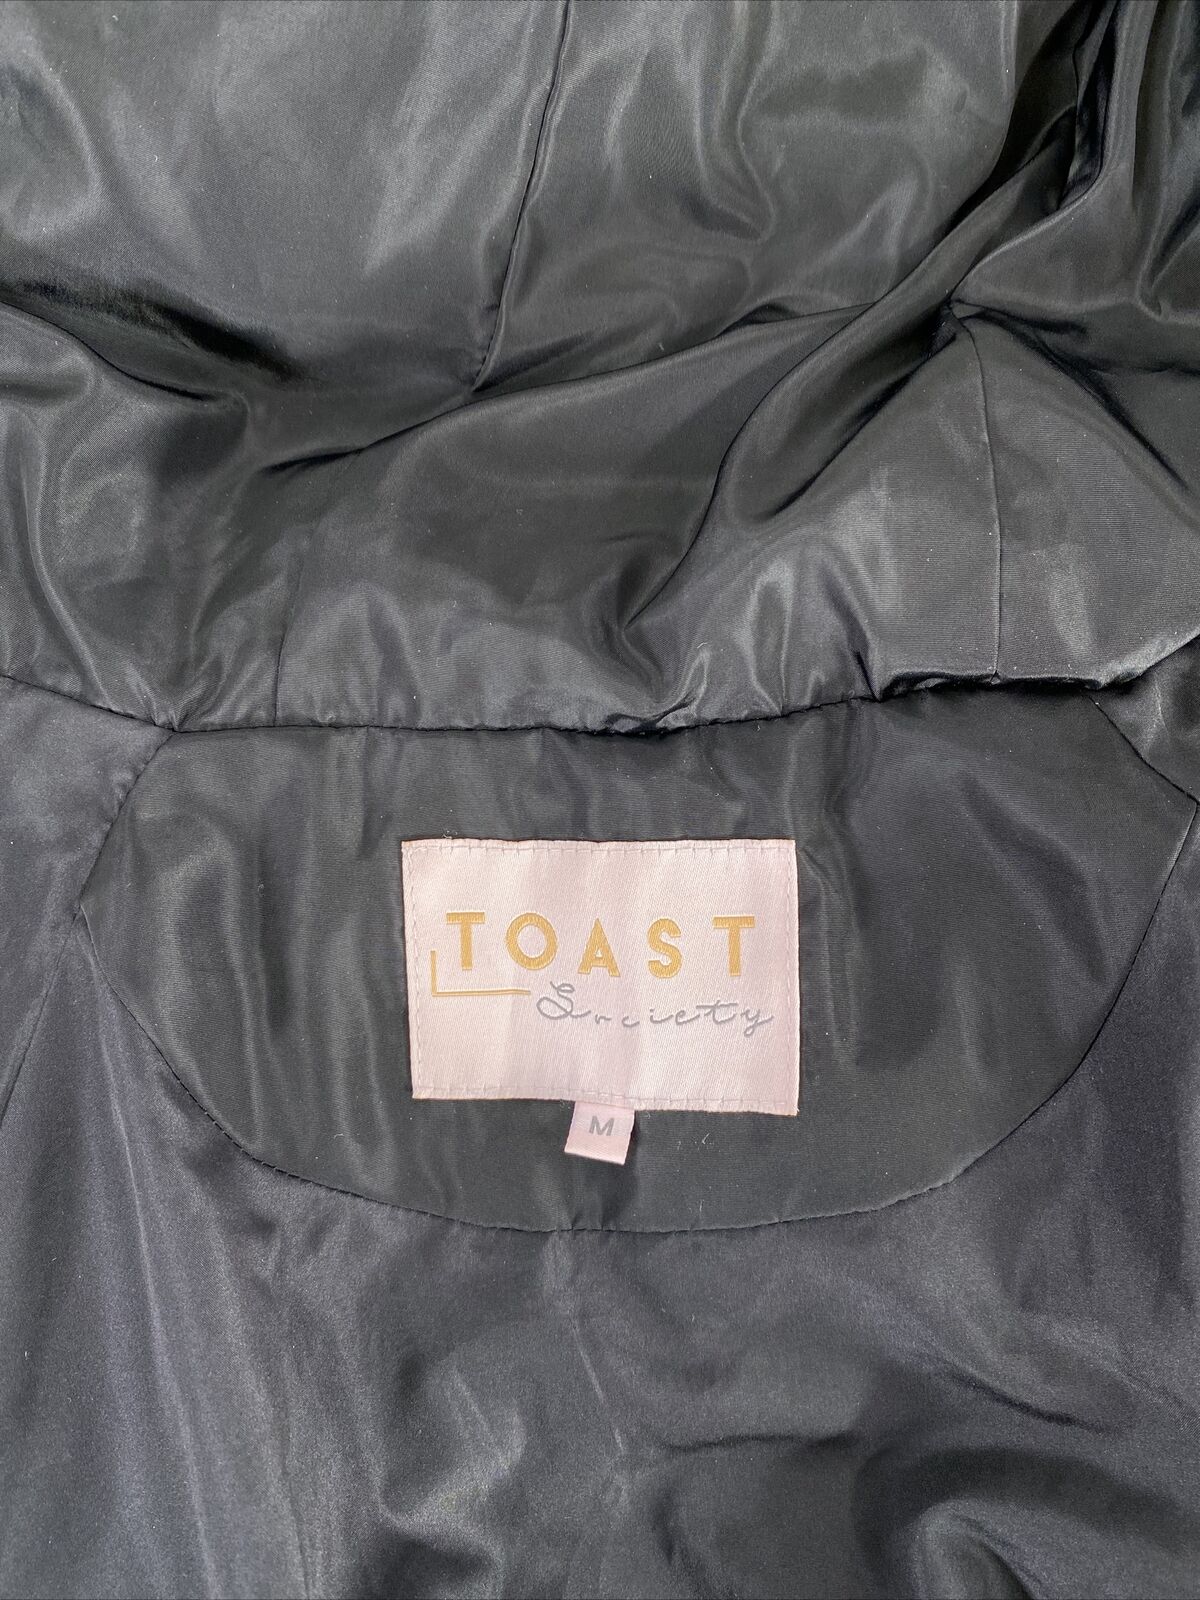 Toast Society Women's Black Hooded Full Zip Puffer Coat - M